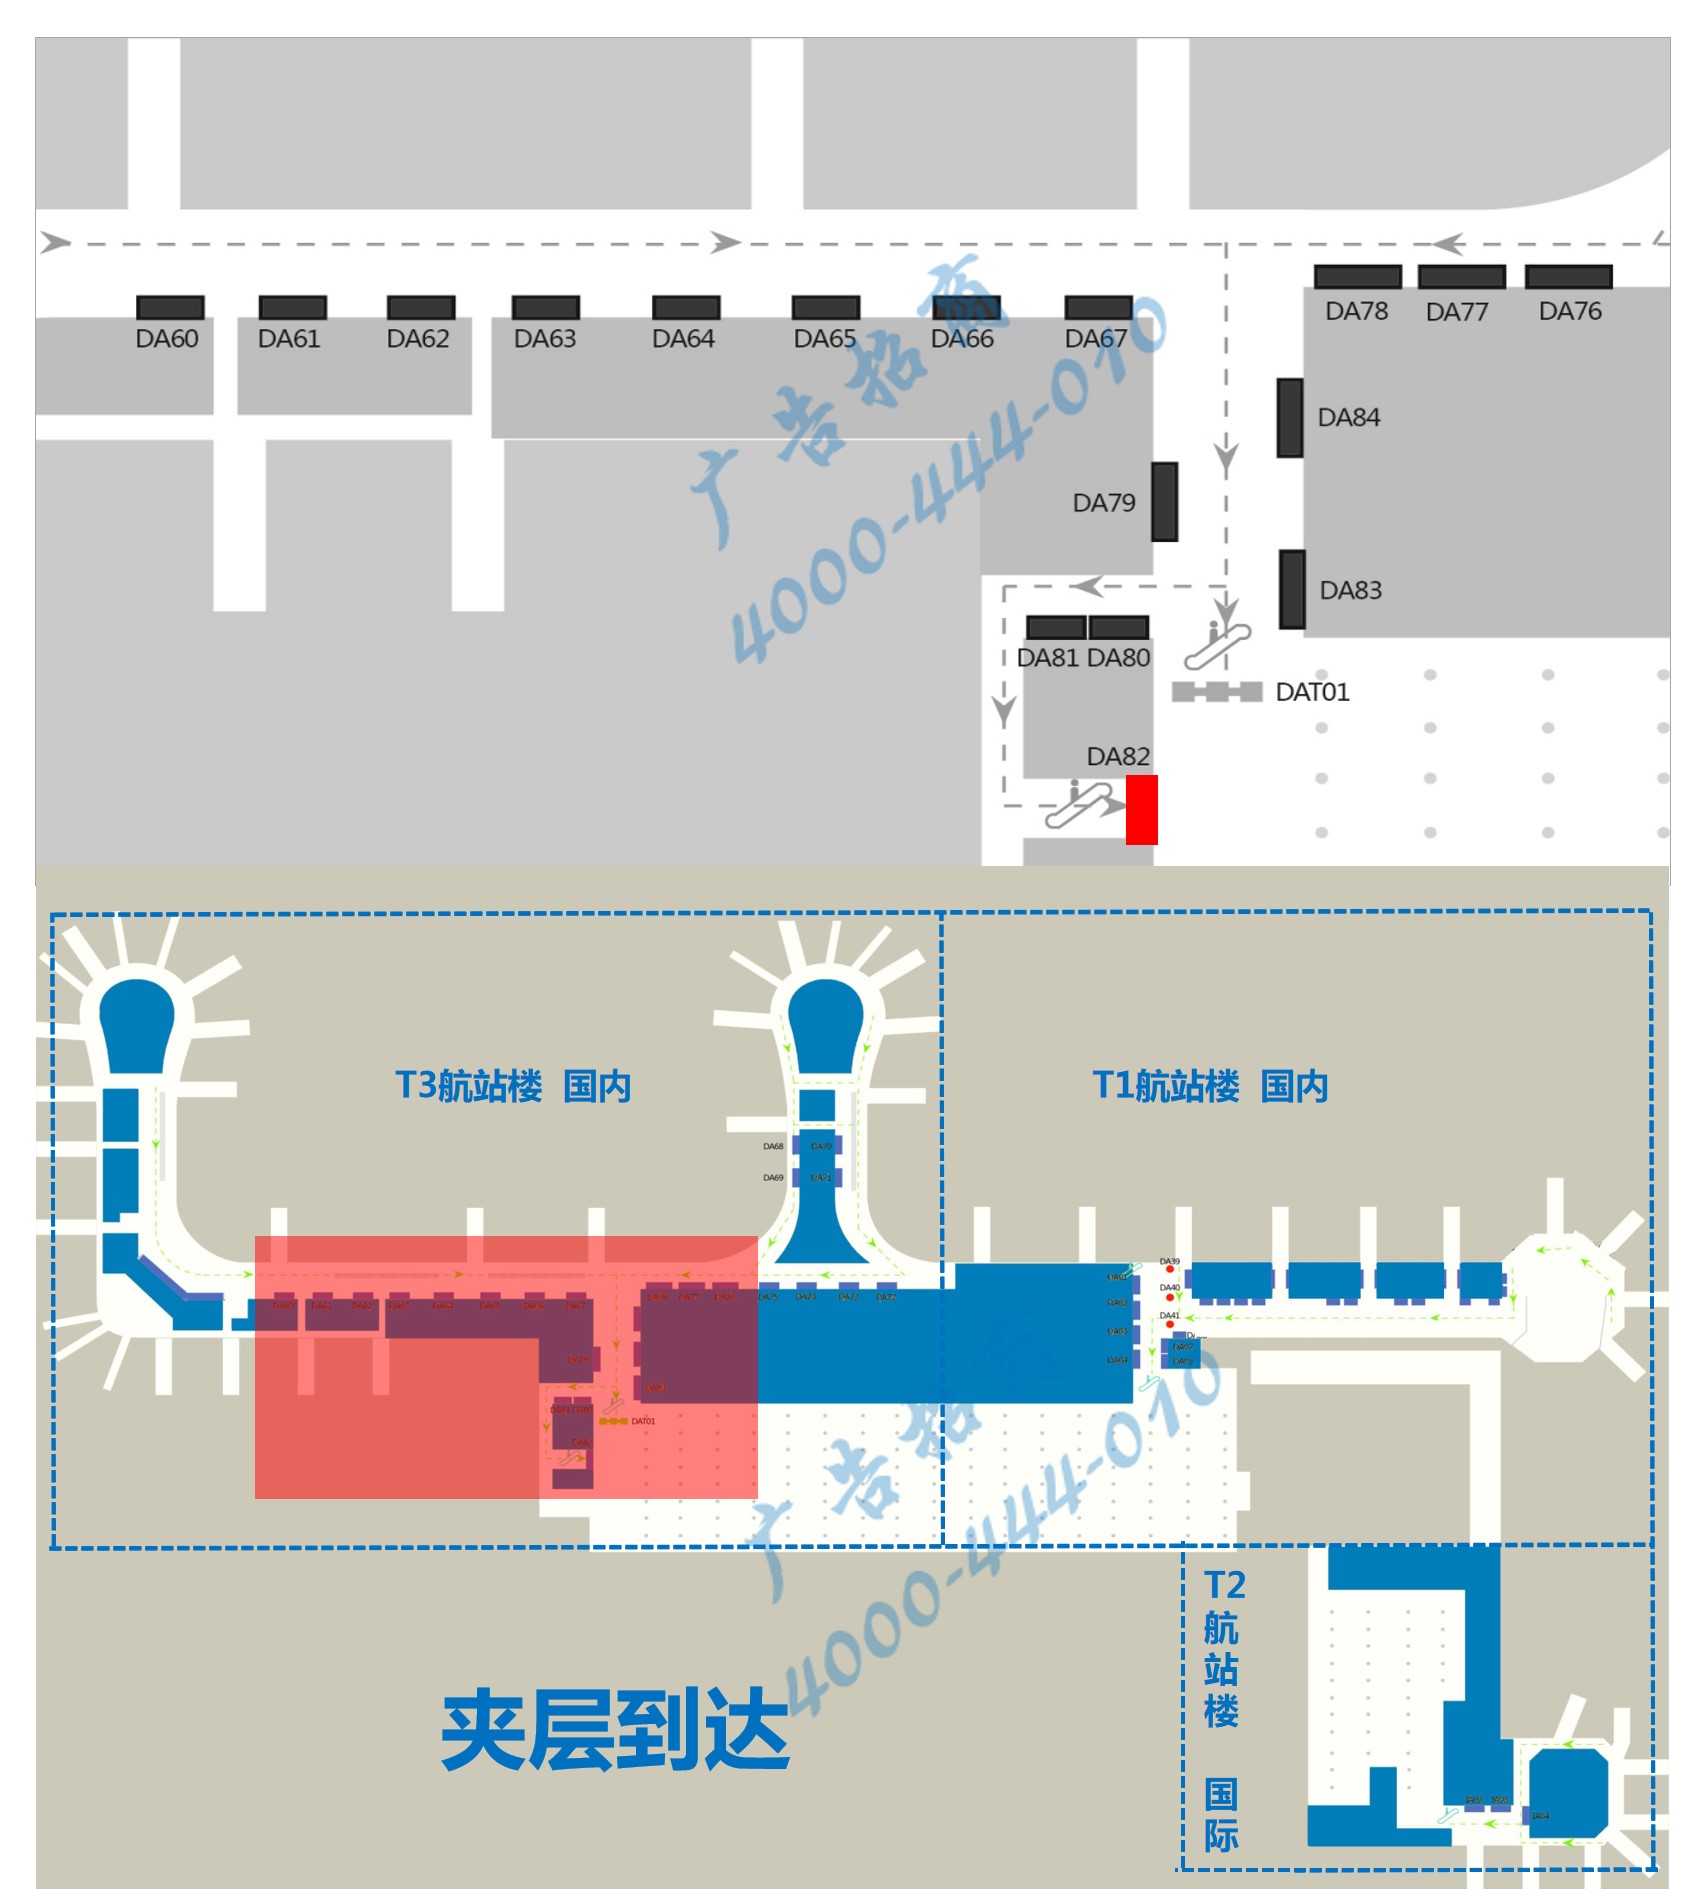 杭州机场广告-T3到达扶梯上方灯箱DA82点位图